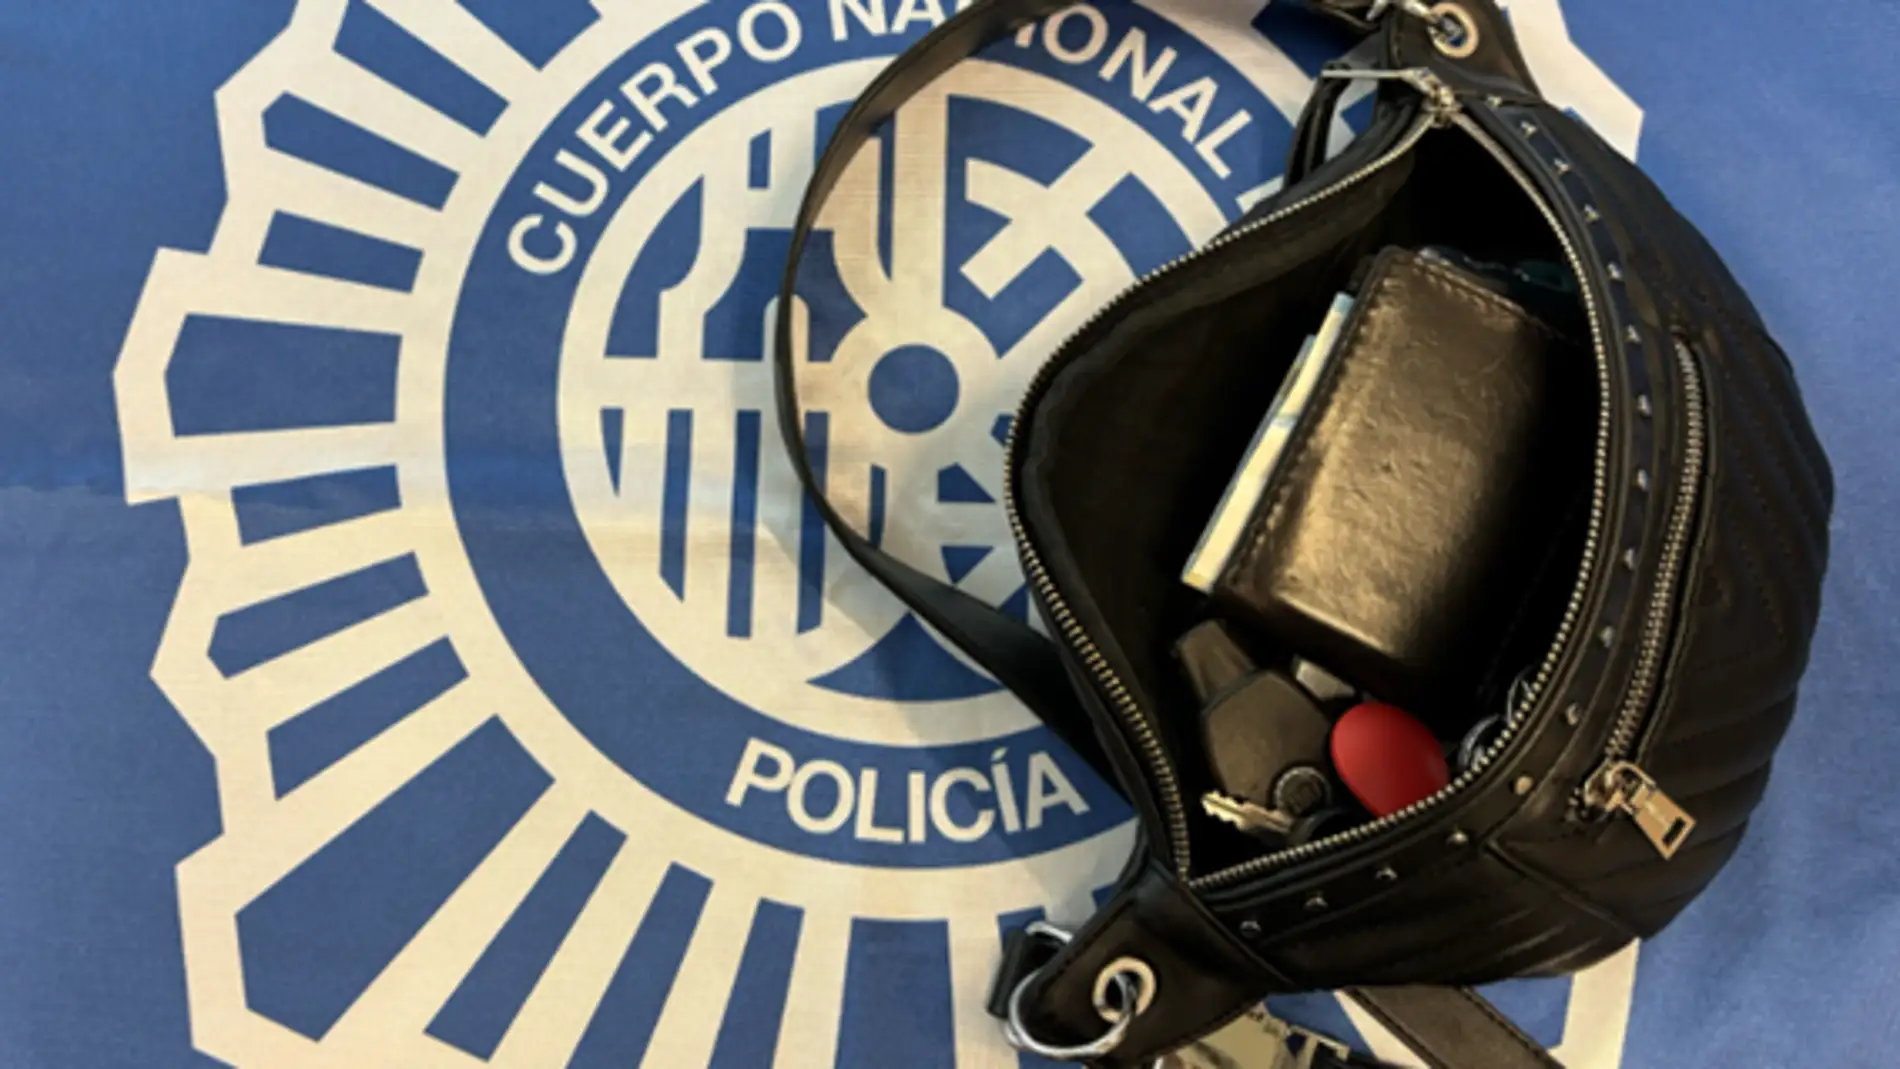 Detenido en Logroño al apropiarse de una riñonera olvidada con 485 euros